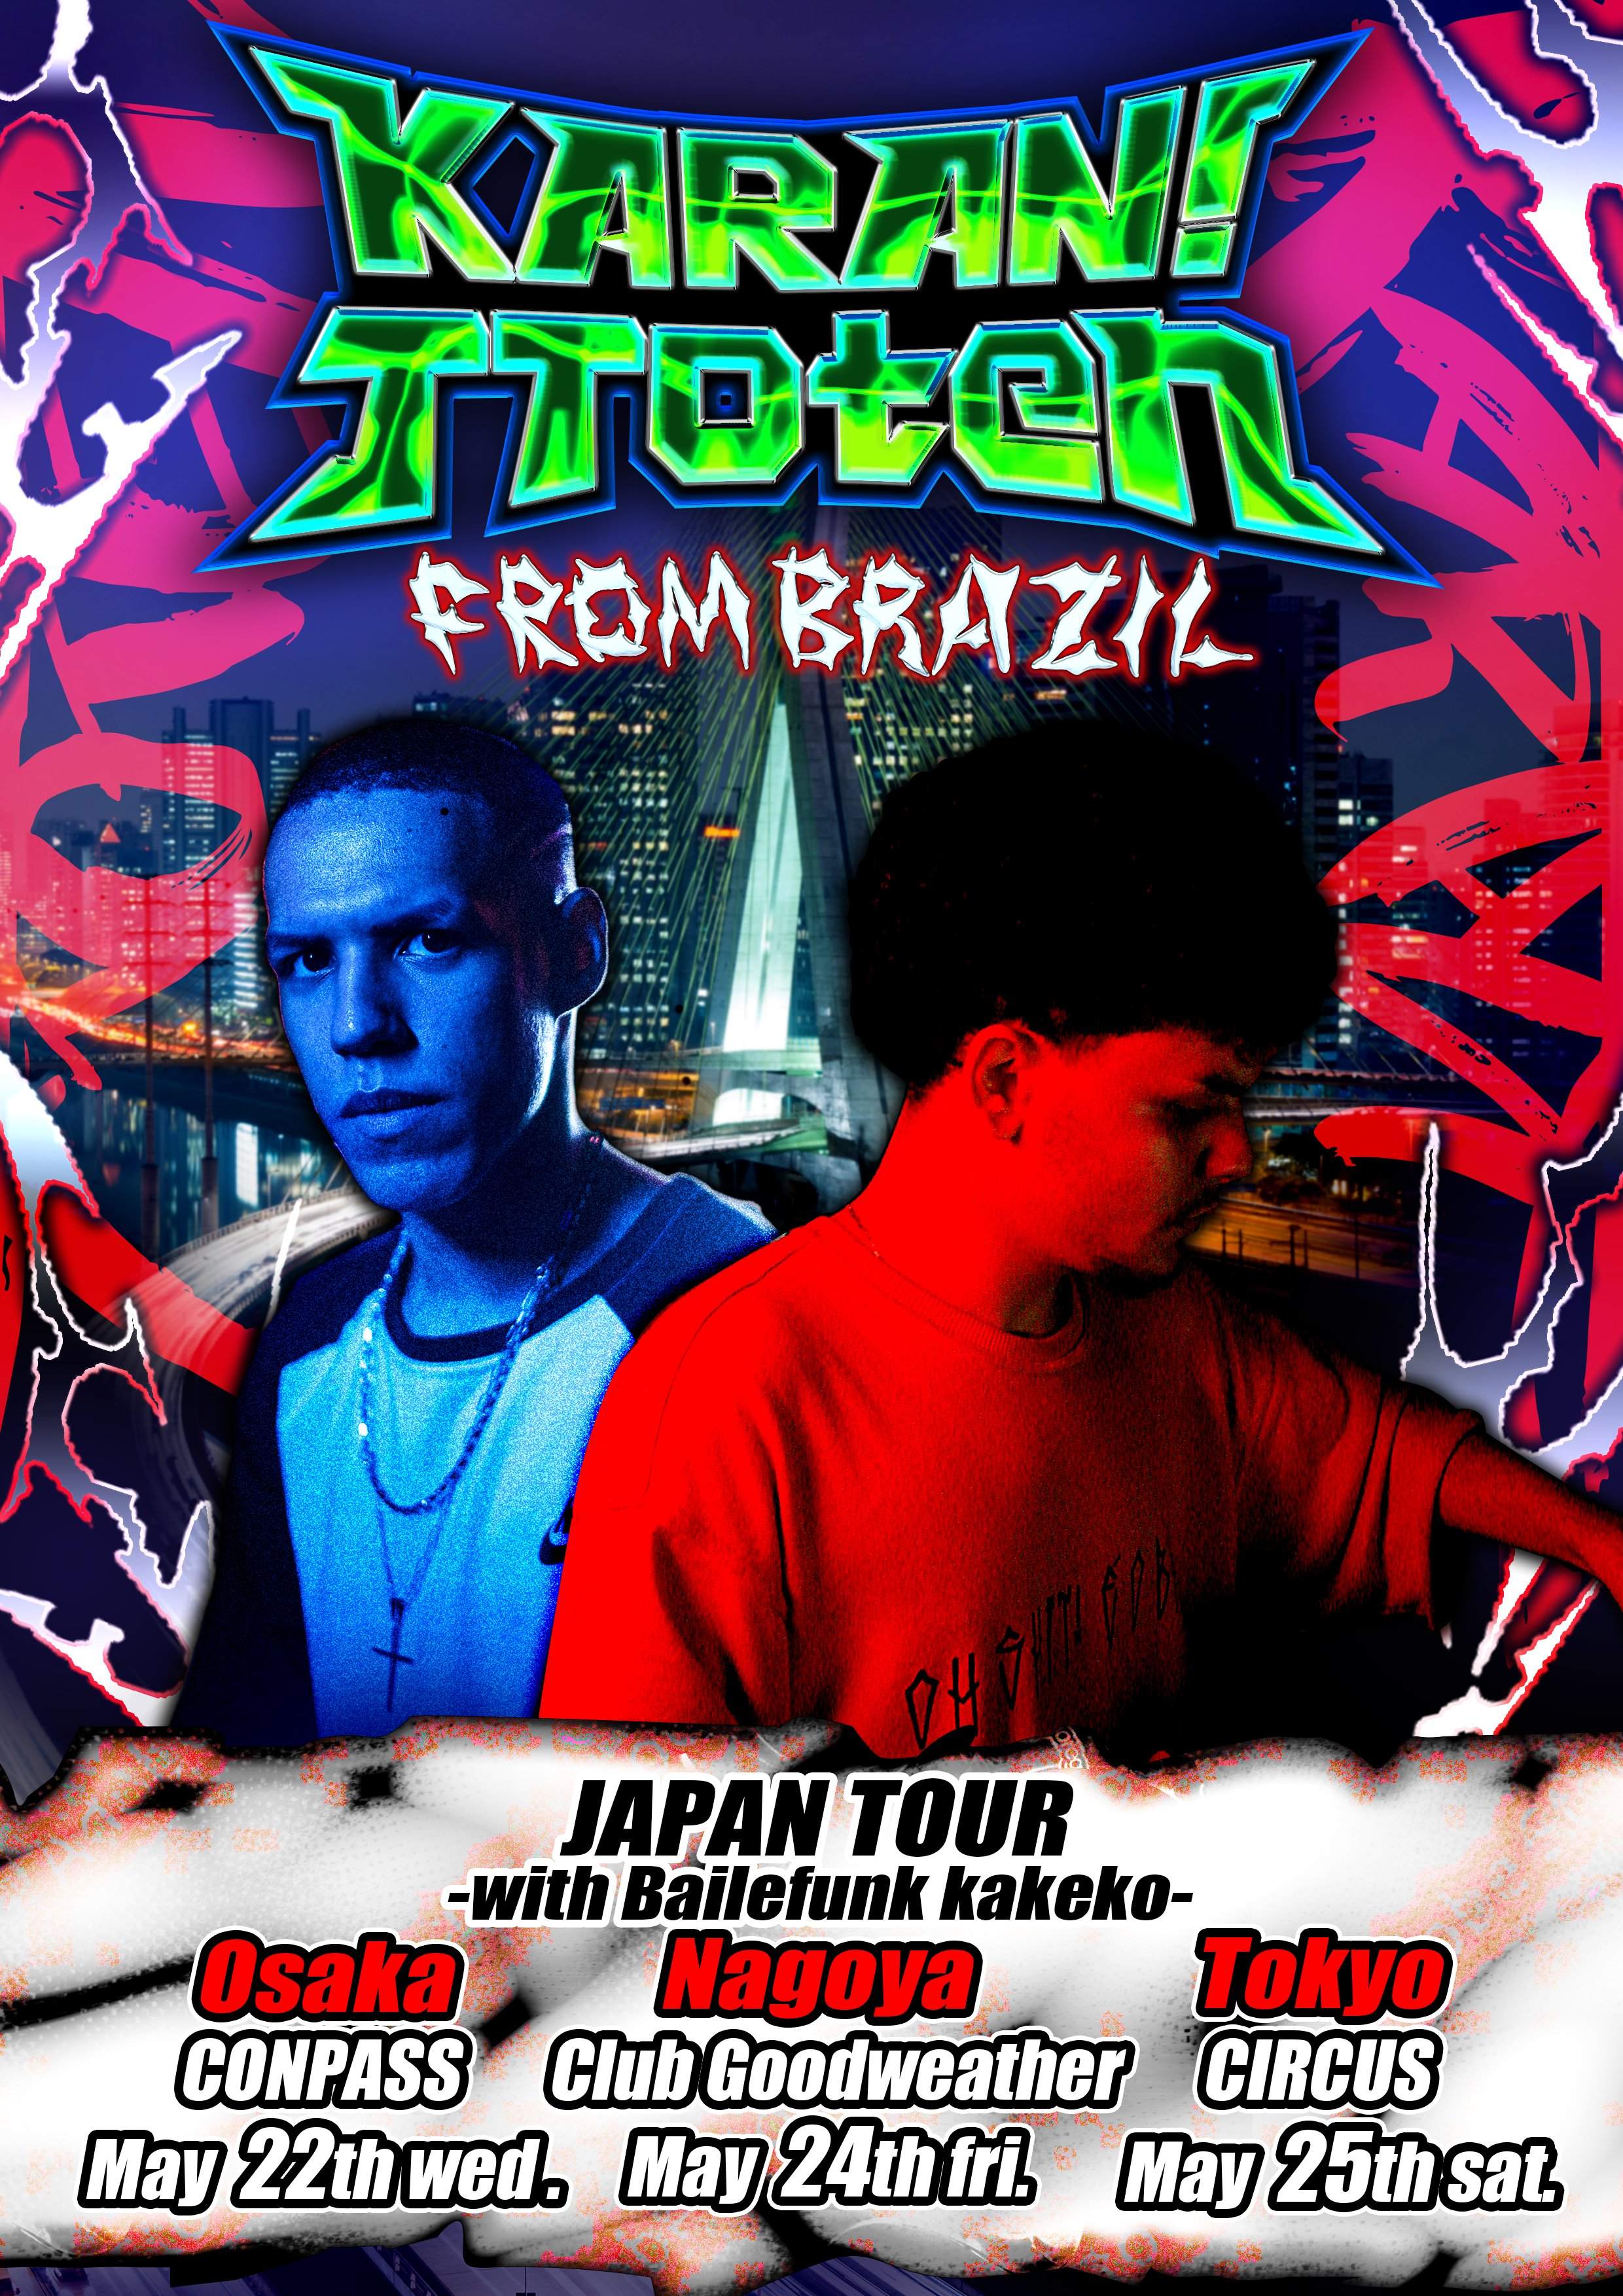 KARAN! & TToten JAPAN TOUR at Nagoya - Página frontal